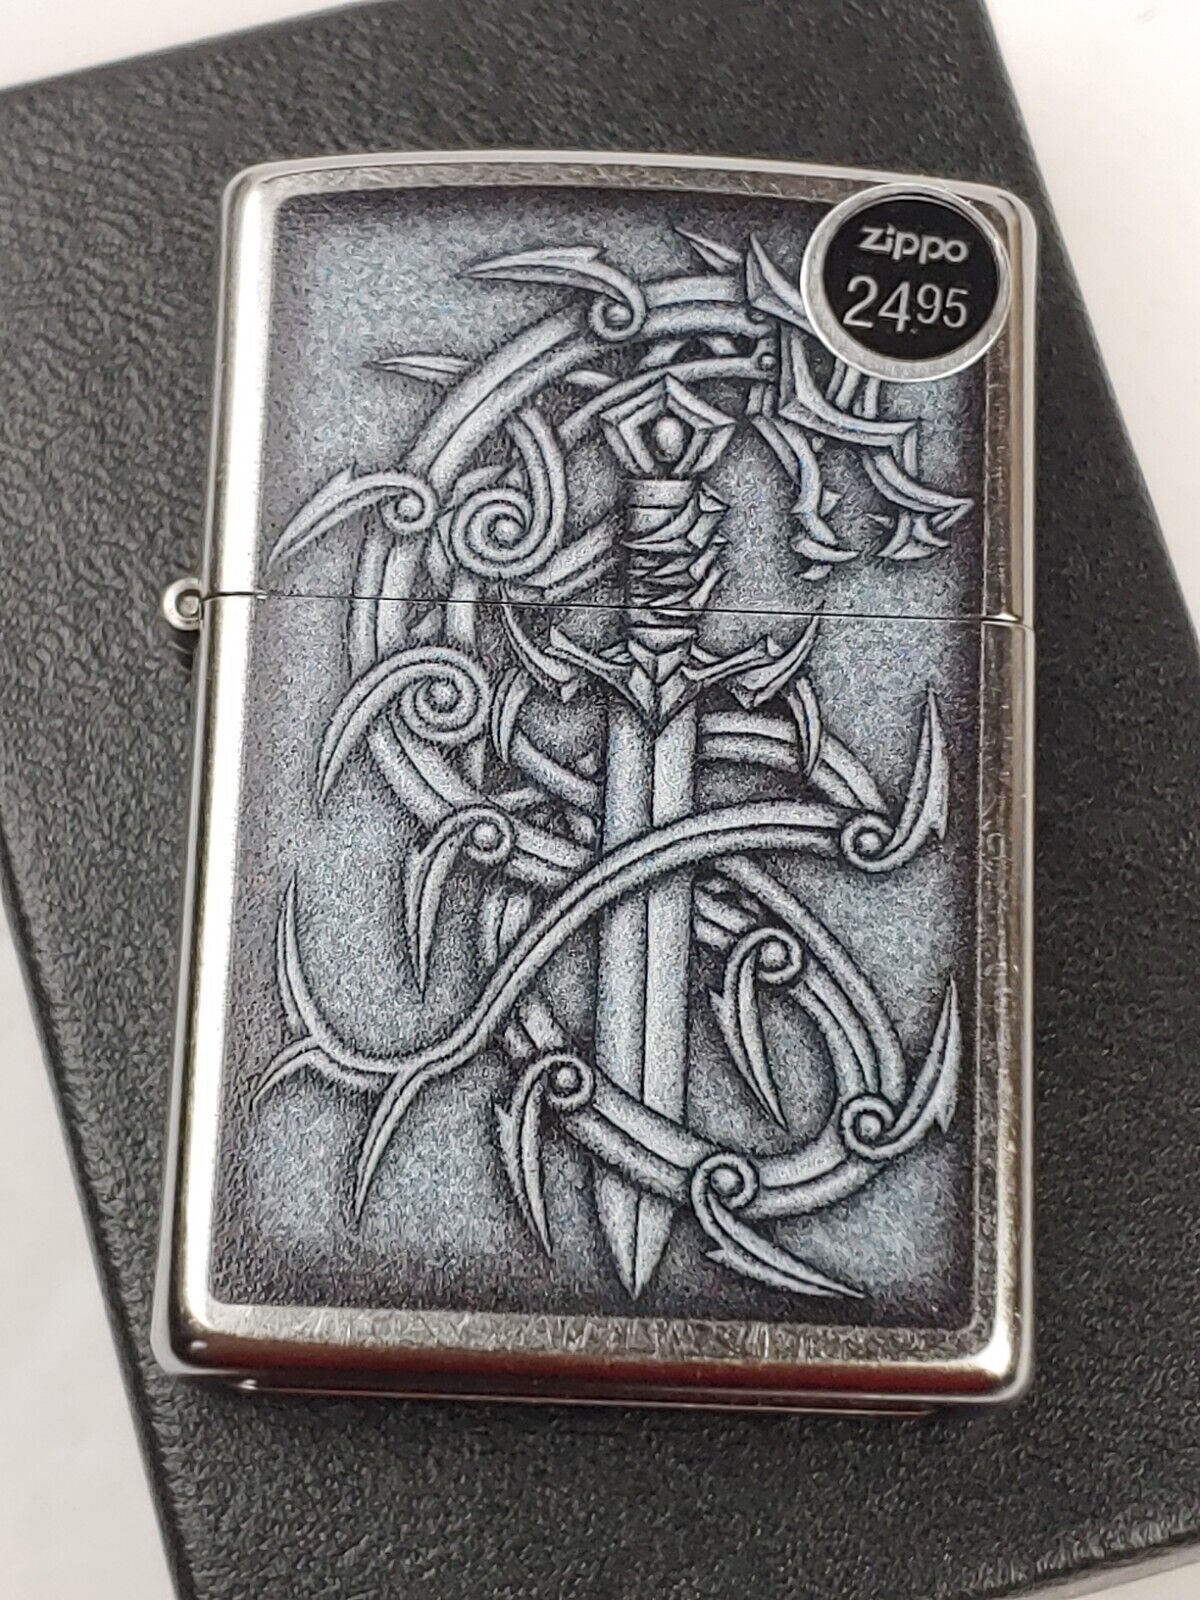 Zippo 48365 Medieval Mythological Design on Street Chrome Lighter - AUG (H) 2022